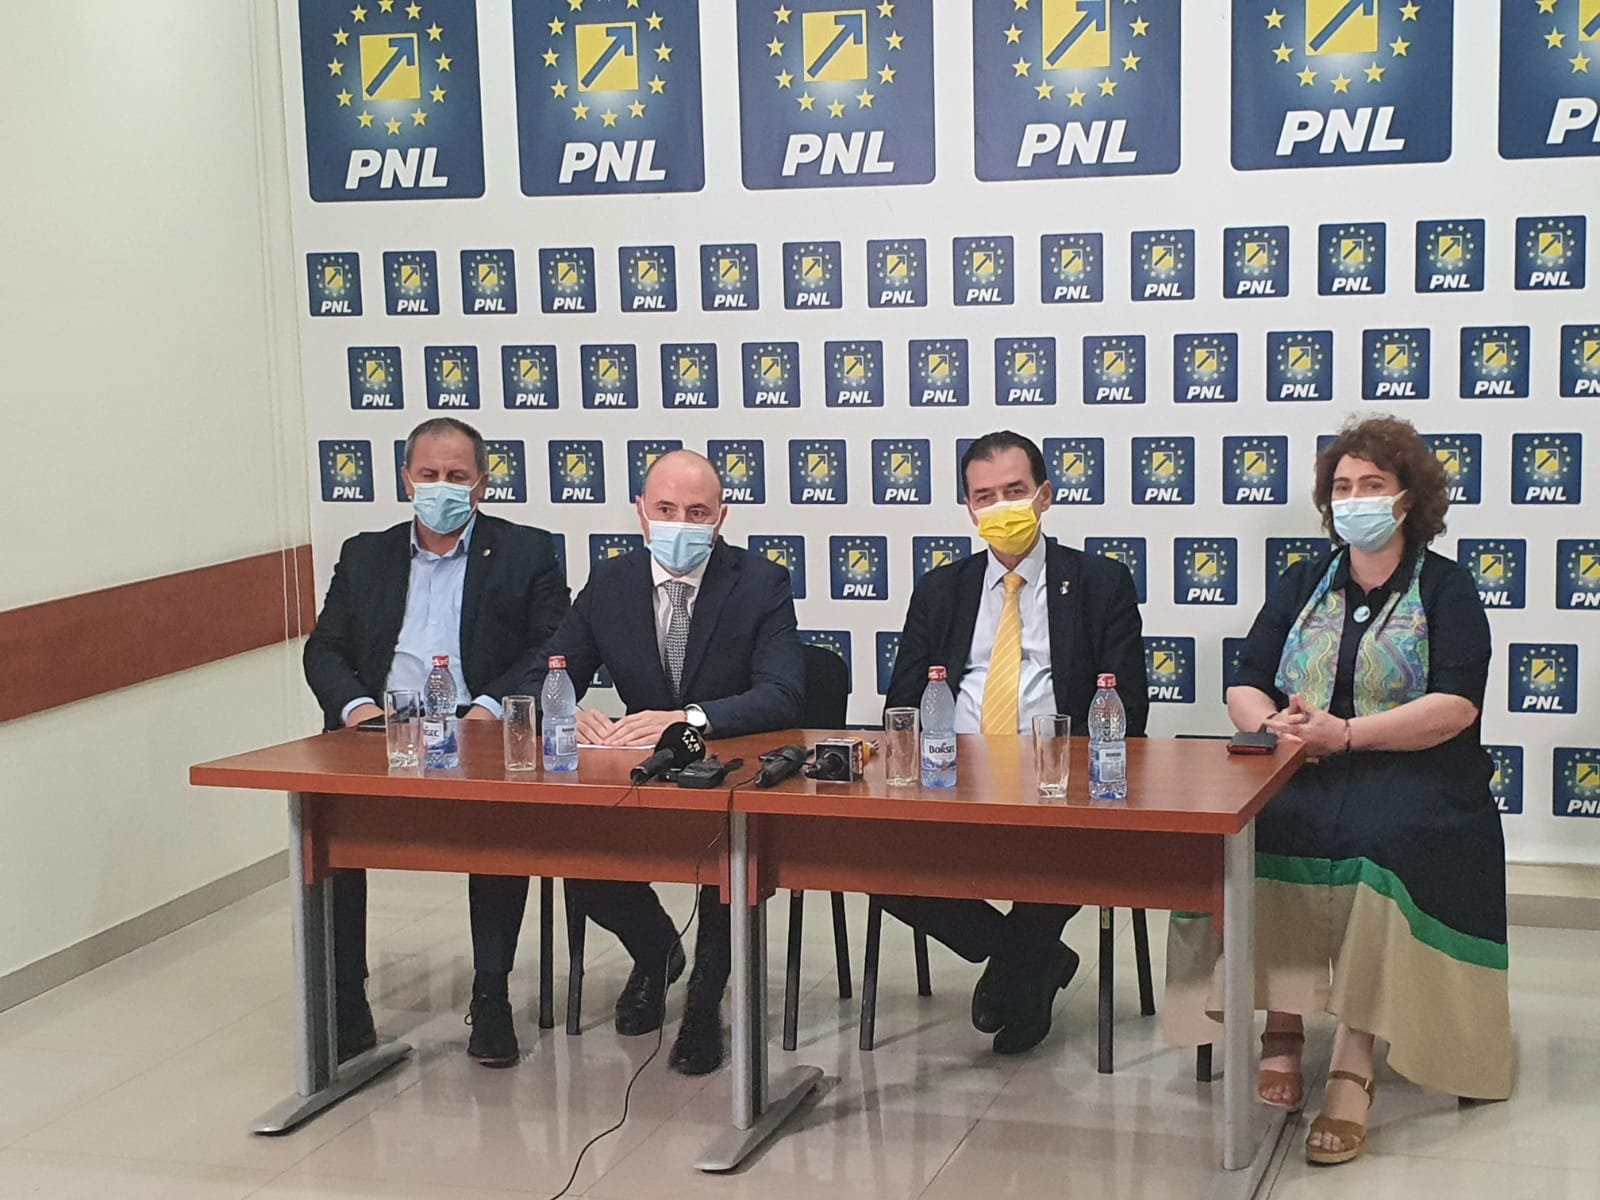  LIVE VIDEO: Ludovic Orban și alți liberali susțin o conferință la Iași